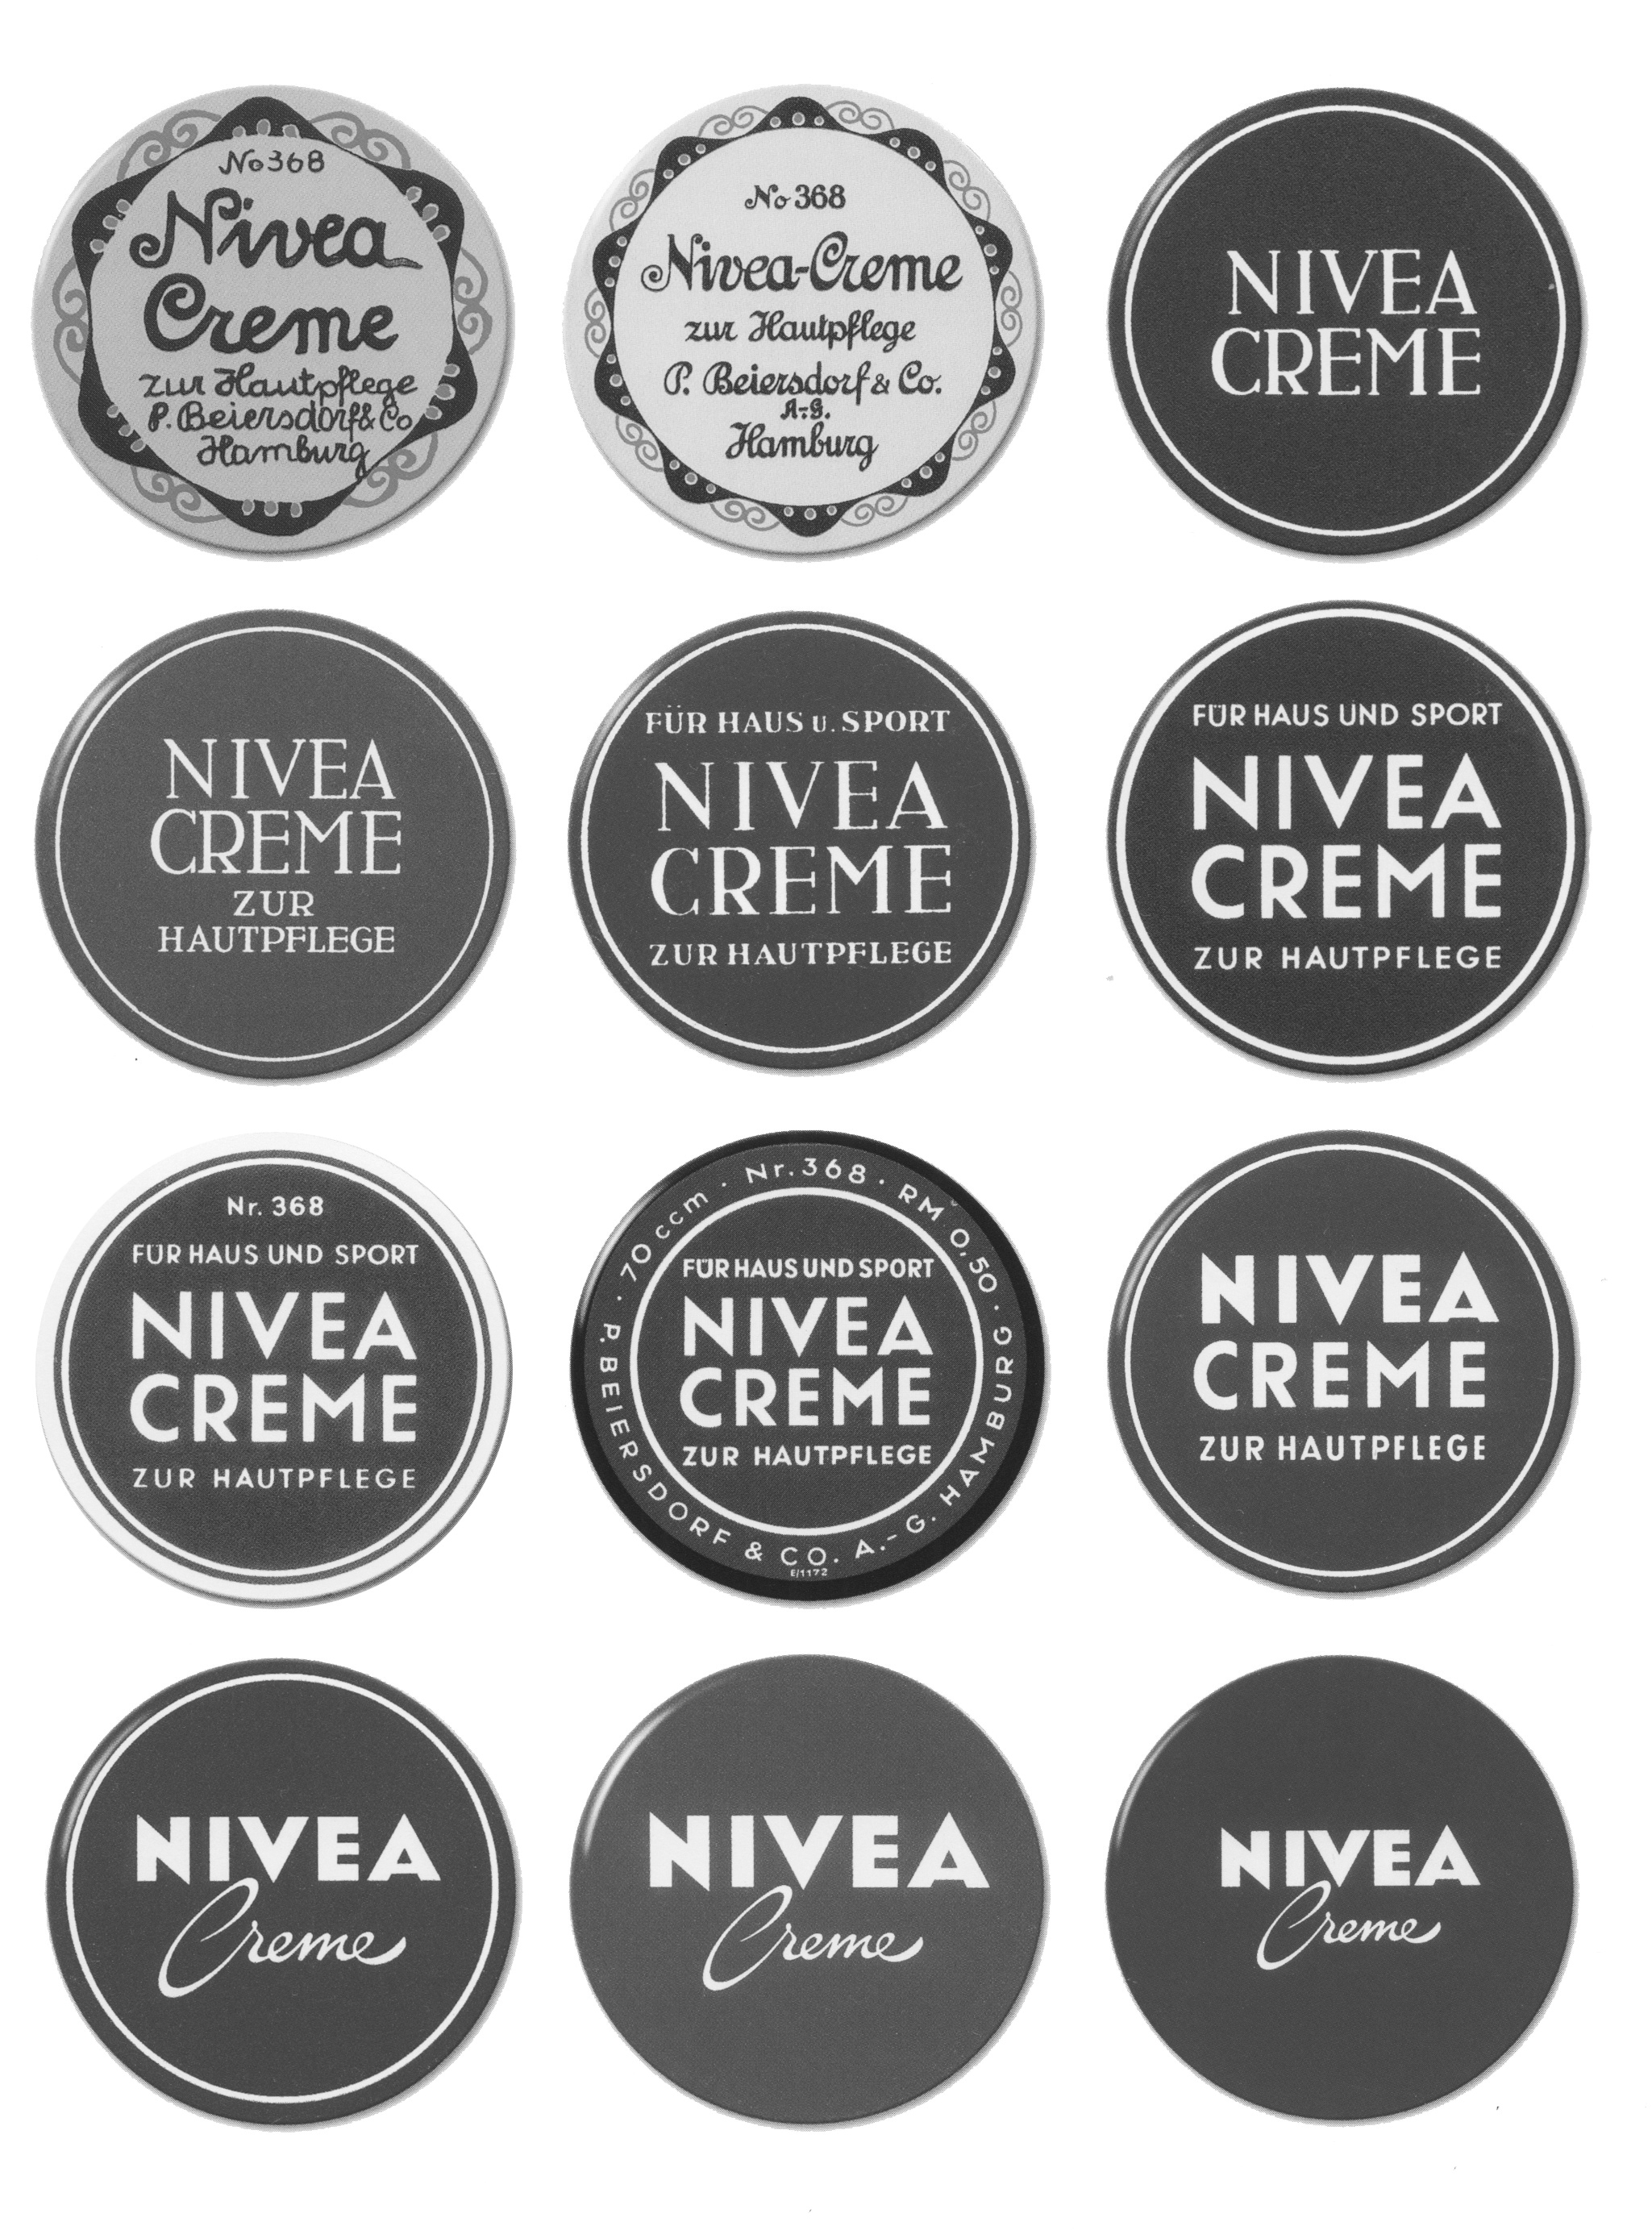 Die Nivea Dose steht seit über 100 Jahren für besondere Hautpflege. Generationen vertrauen auf dieses Produkt mit gleichbleibendem positivem Gefühl.